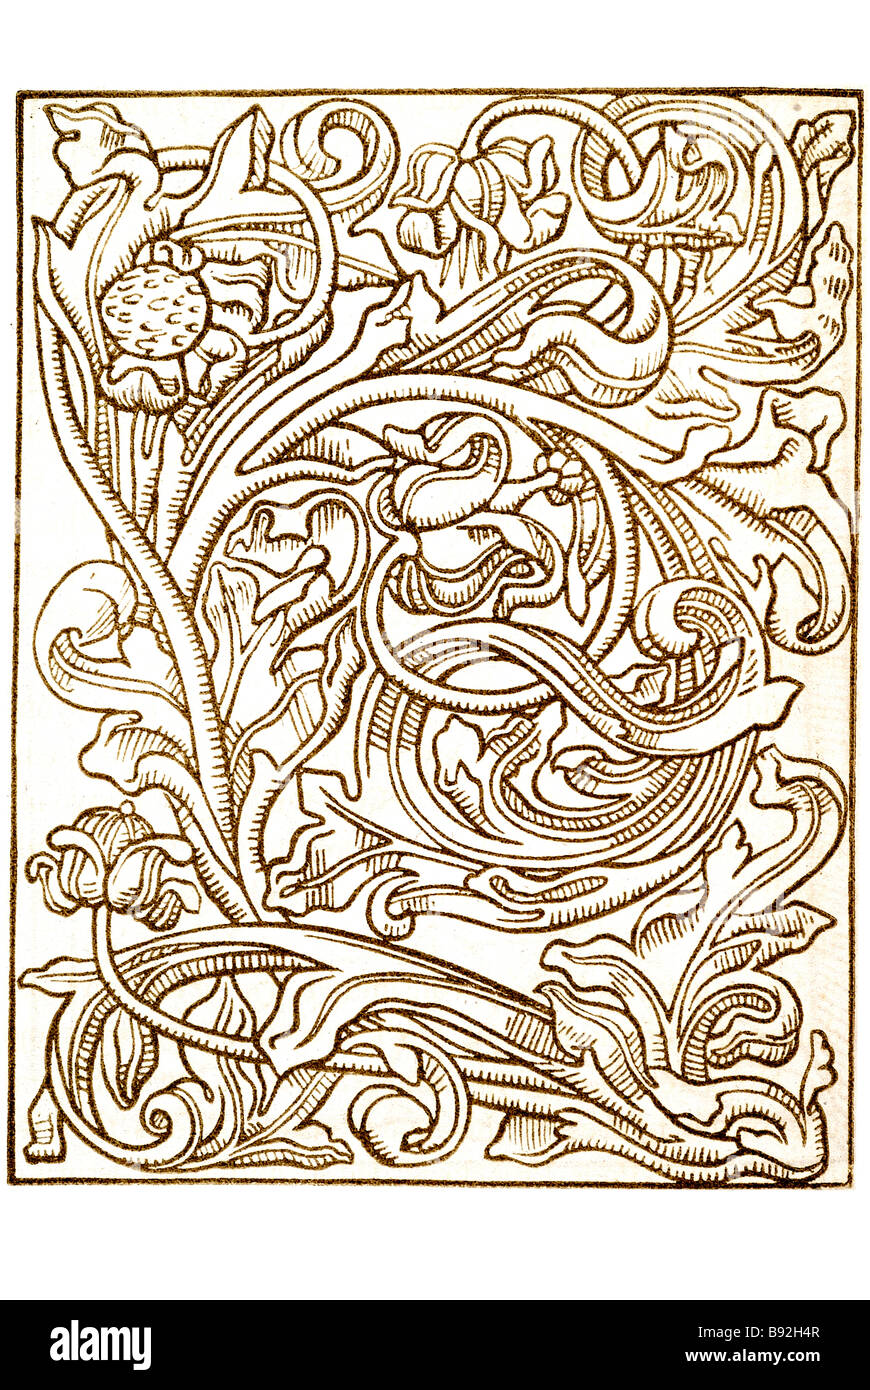 cuts alpphabet parchment letters lettering people manuscript period plant flower ornamental design wood carving box Stock Photo